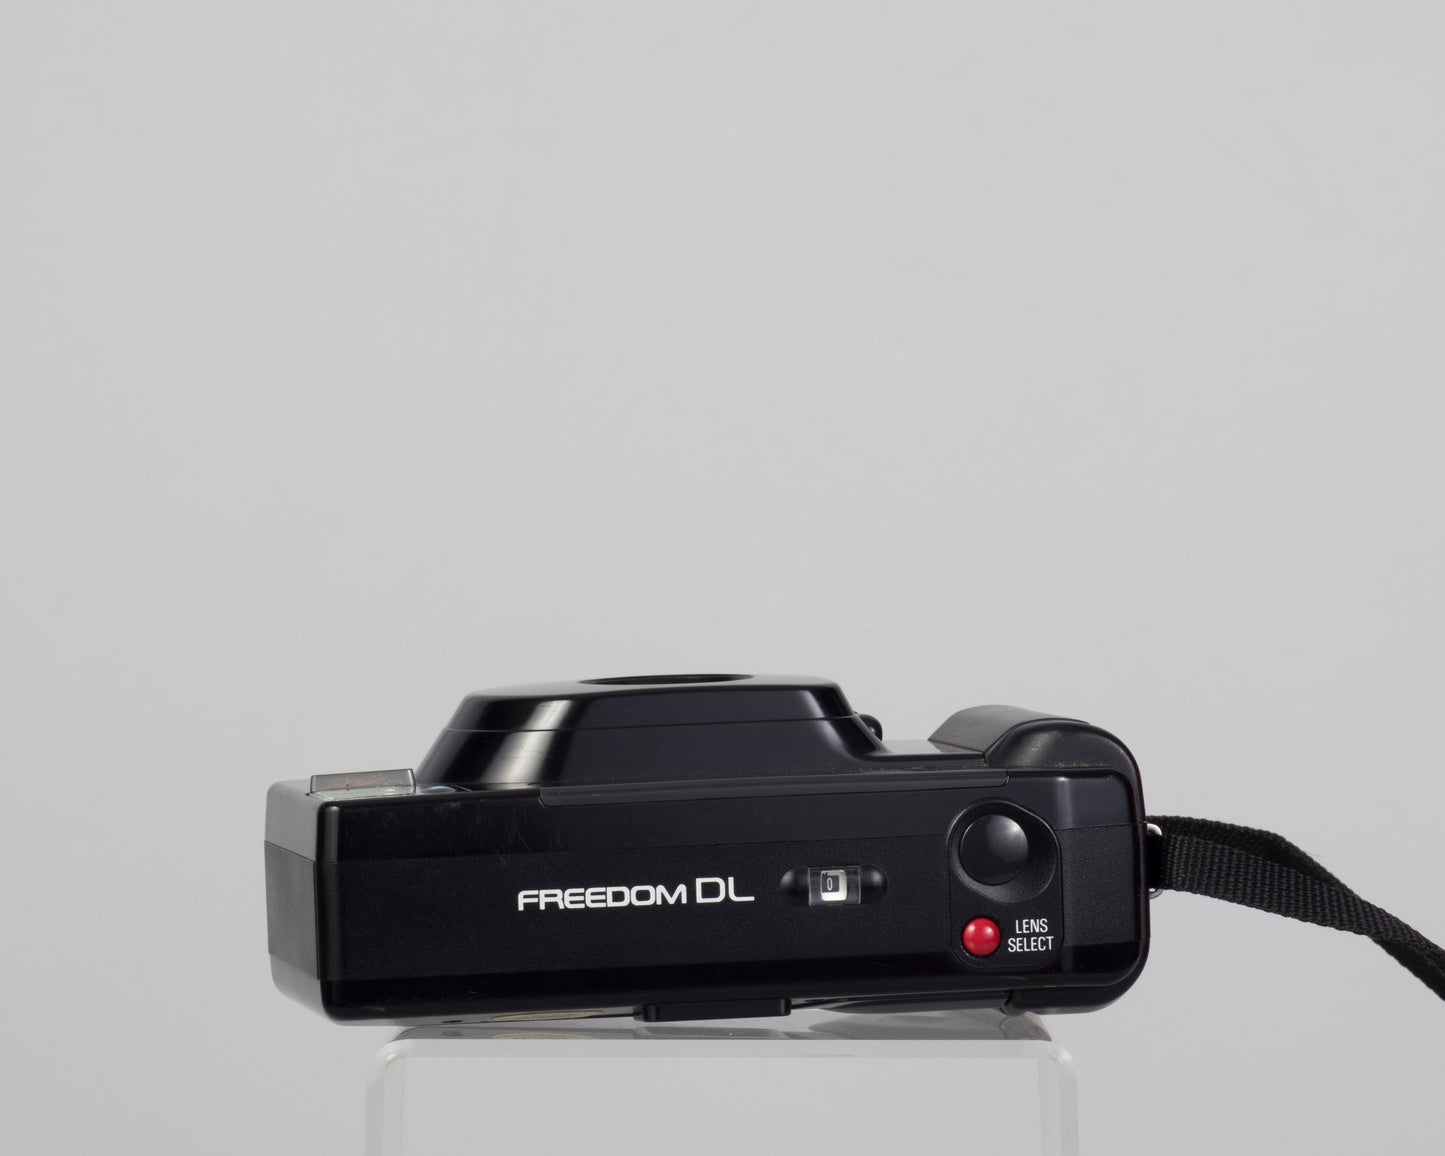 Appareil photo Minolta Freedom DL à double objectif 35 mm avec étui (série 78206656)